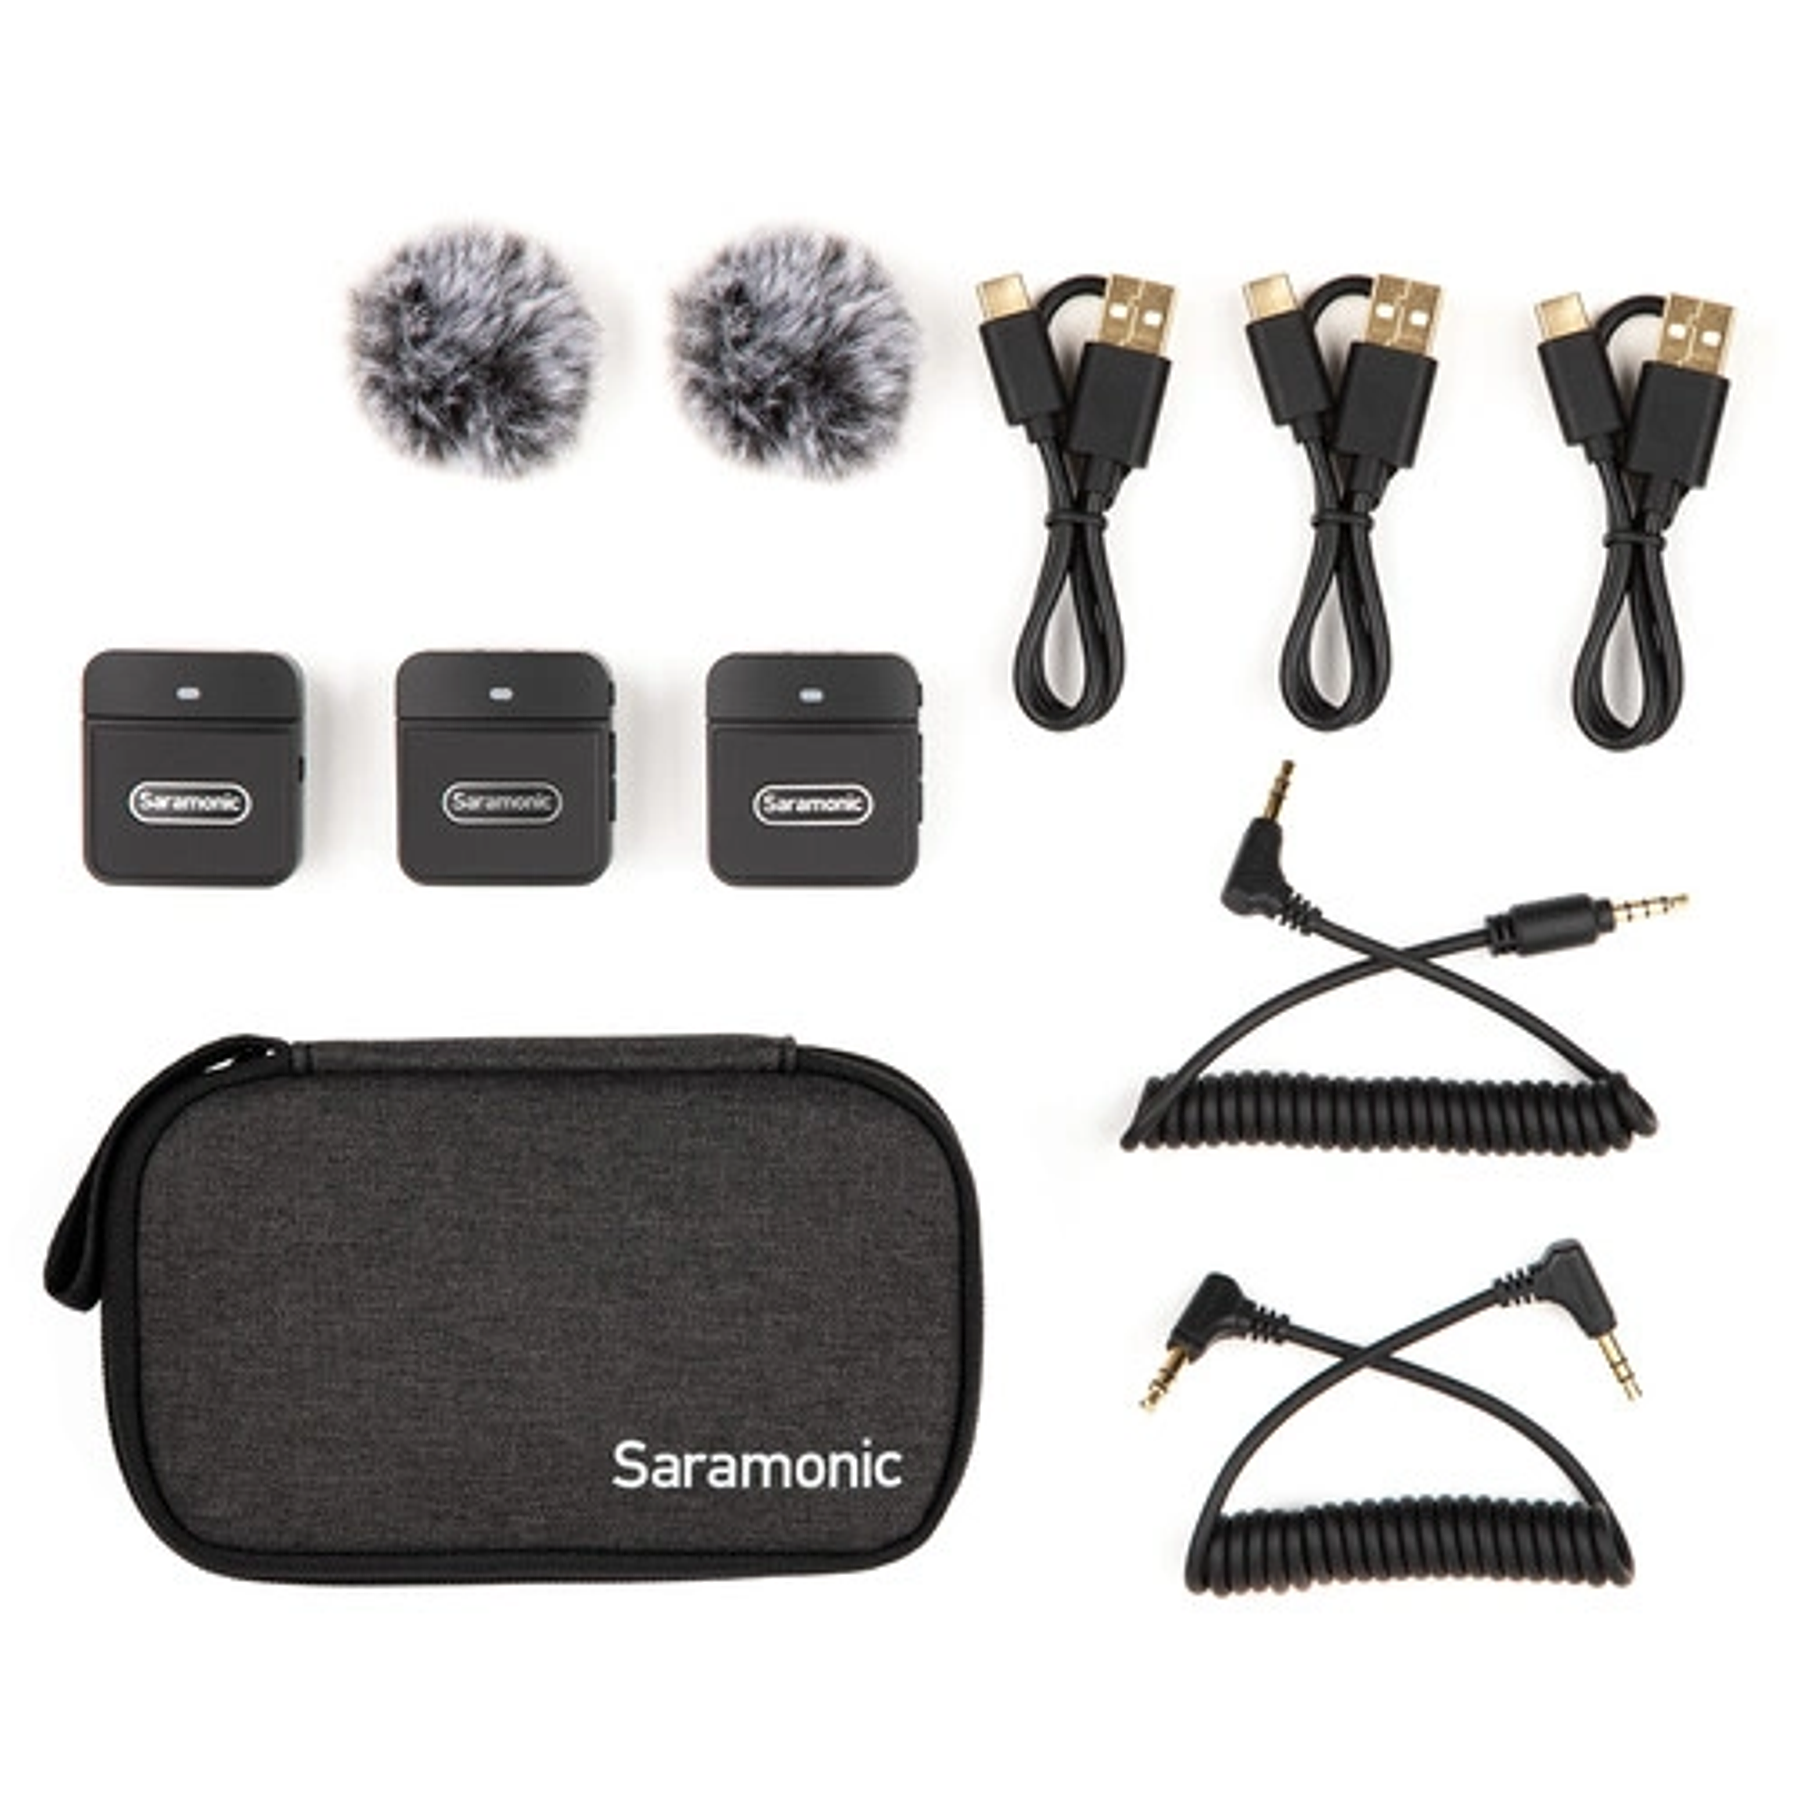 Sistema de micrófono con clip inalámbrico para montaje en cámara digital Saramonic Blink 100